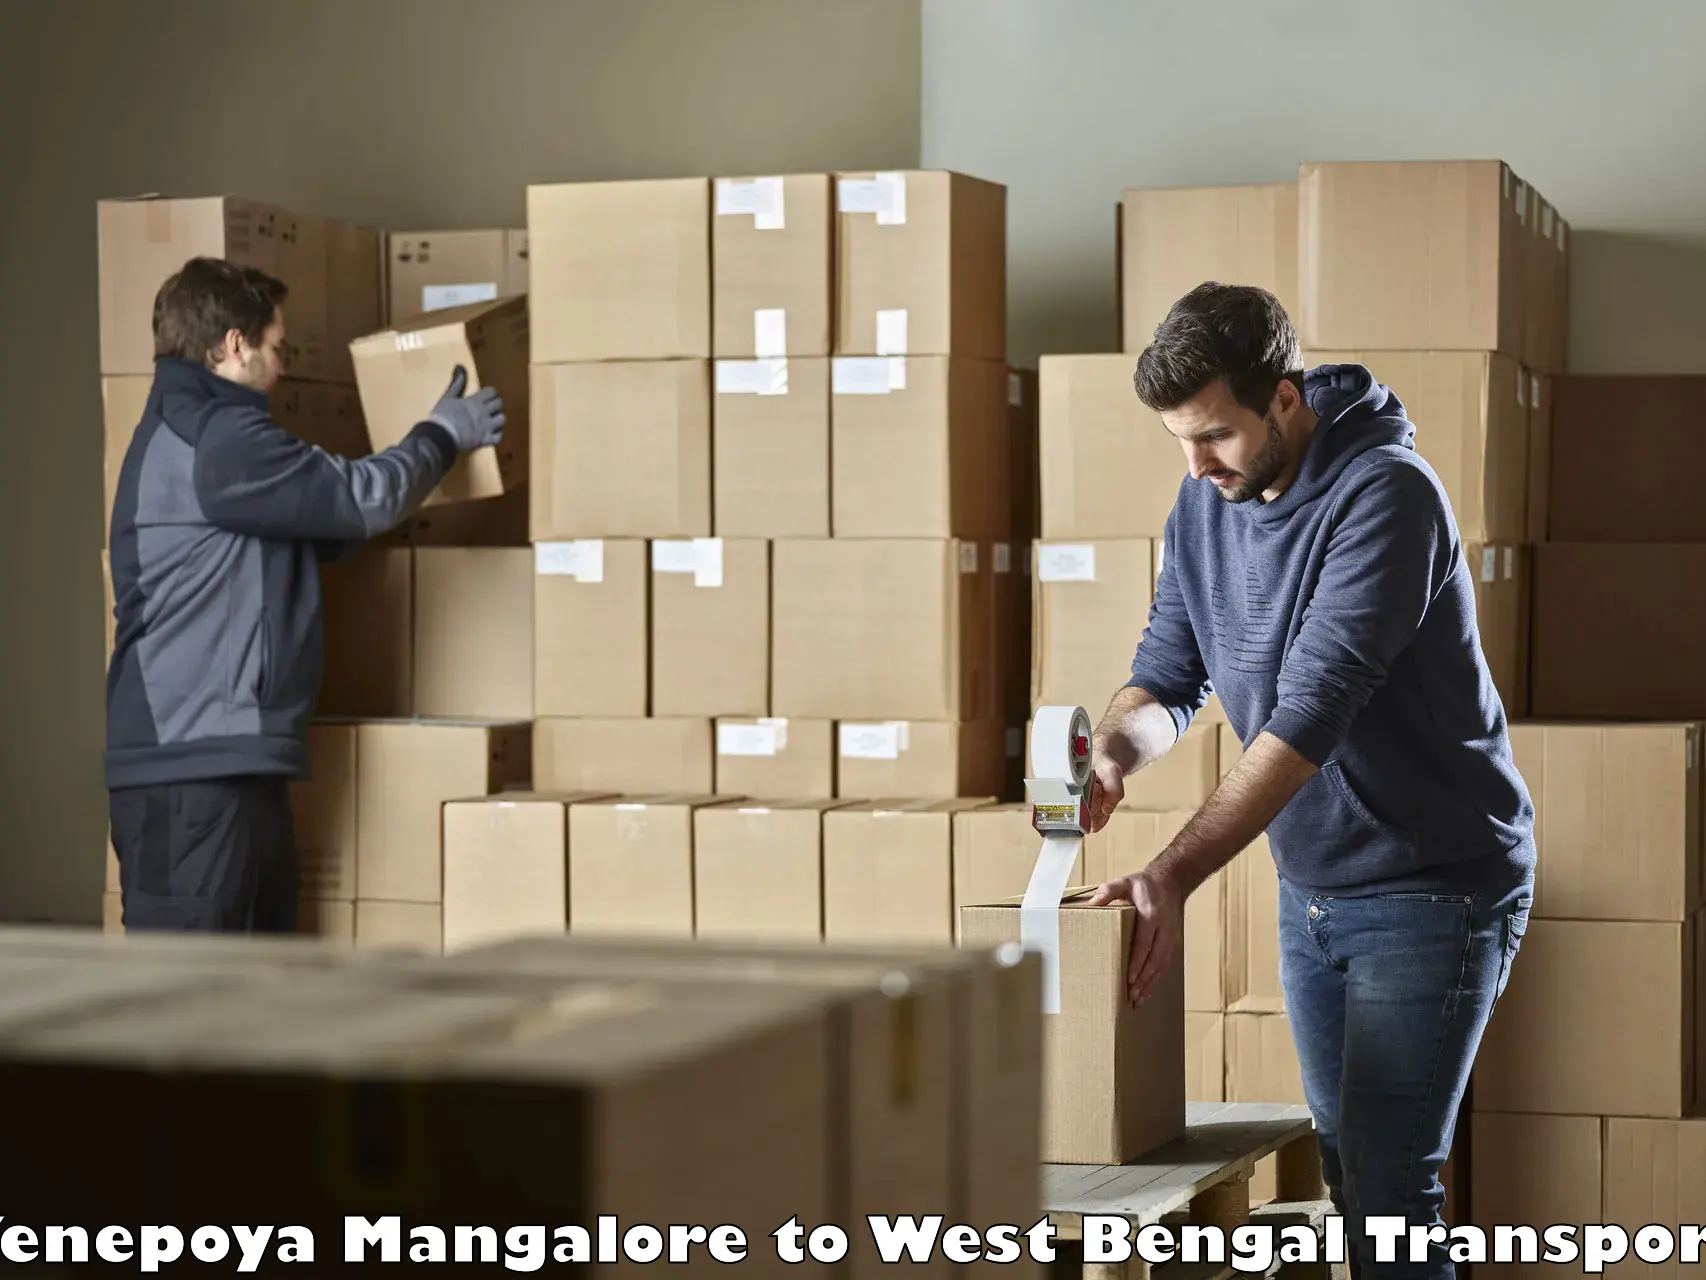 Pick up transport service Yenepoya Mangalore to West Bengal